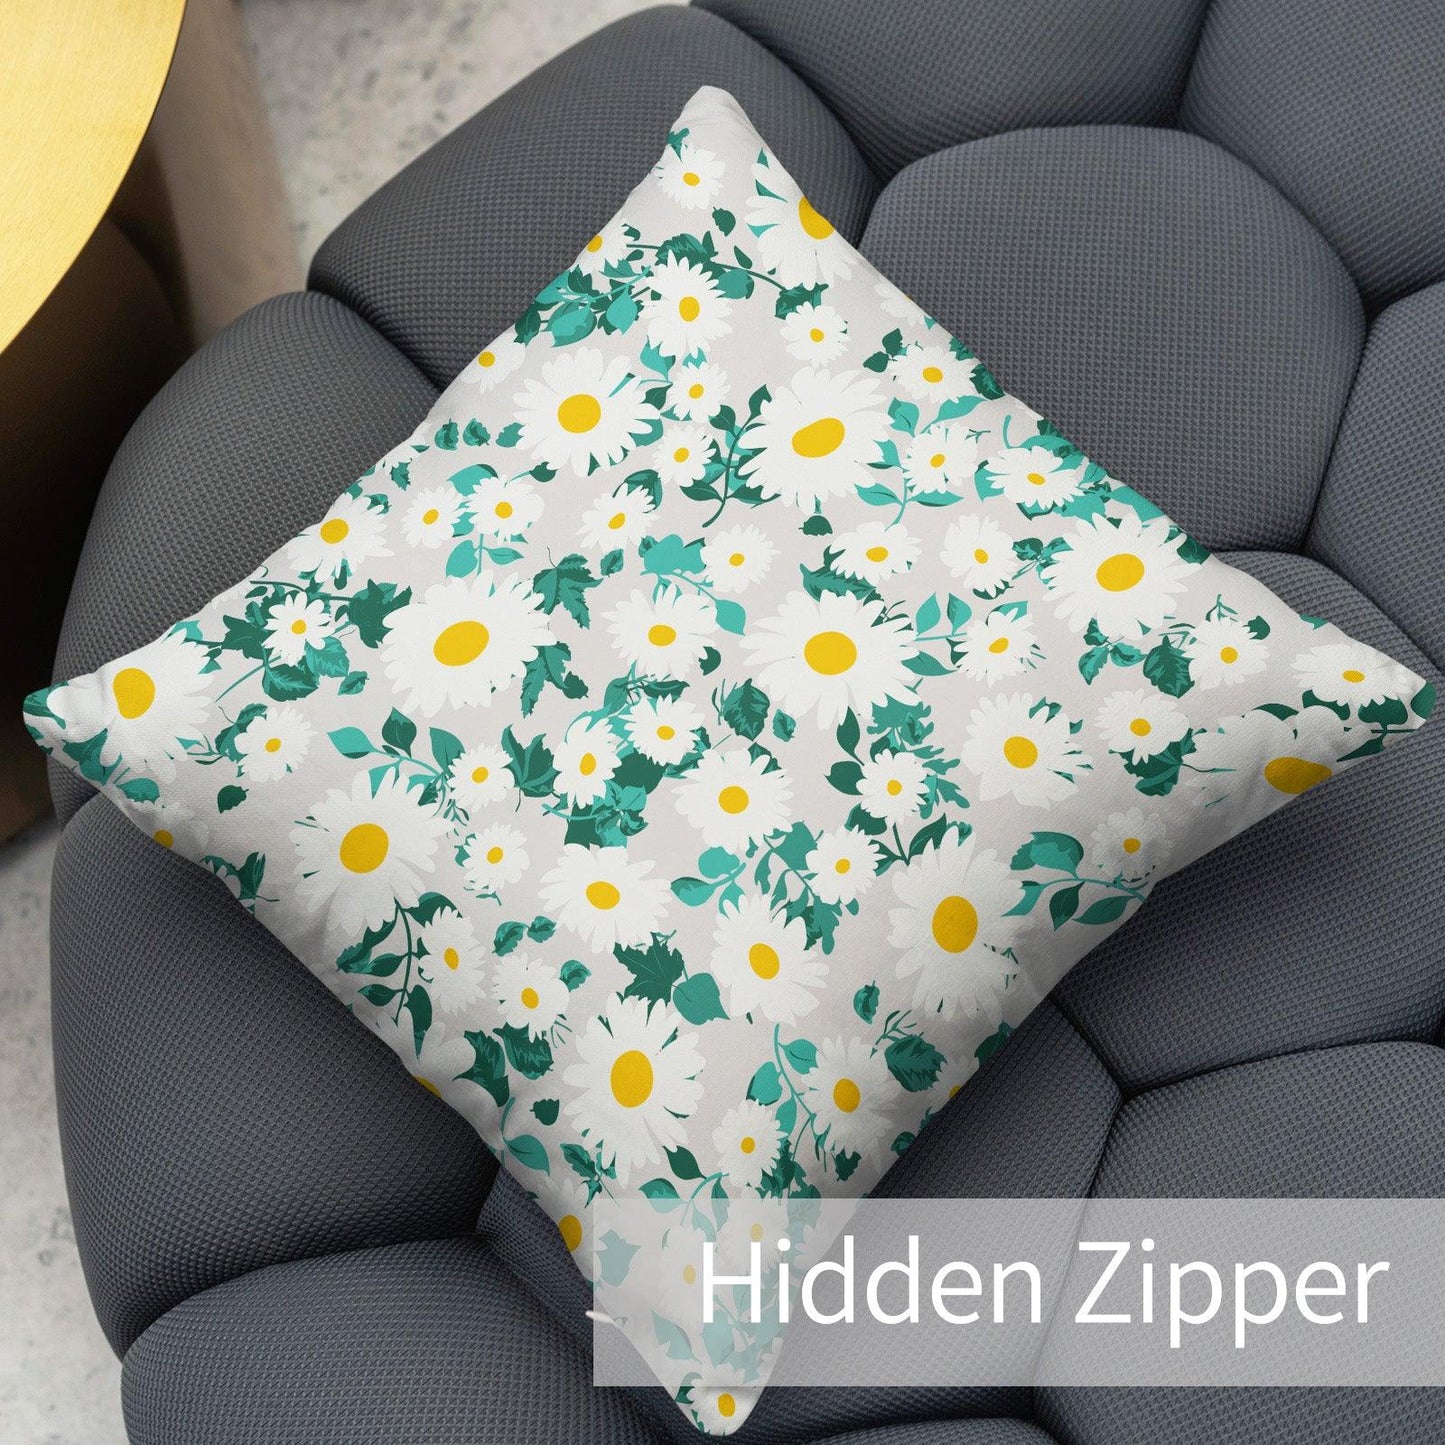 Modern Flower Throw Pillow Covers Pack of 2 18x18 Inch (Cute Daisy) - Berkin Arts